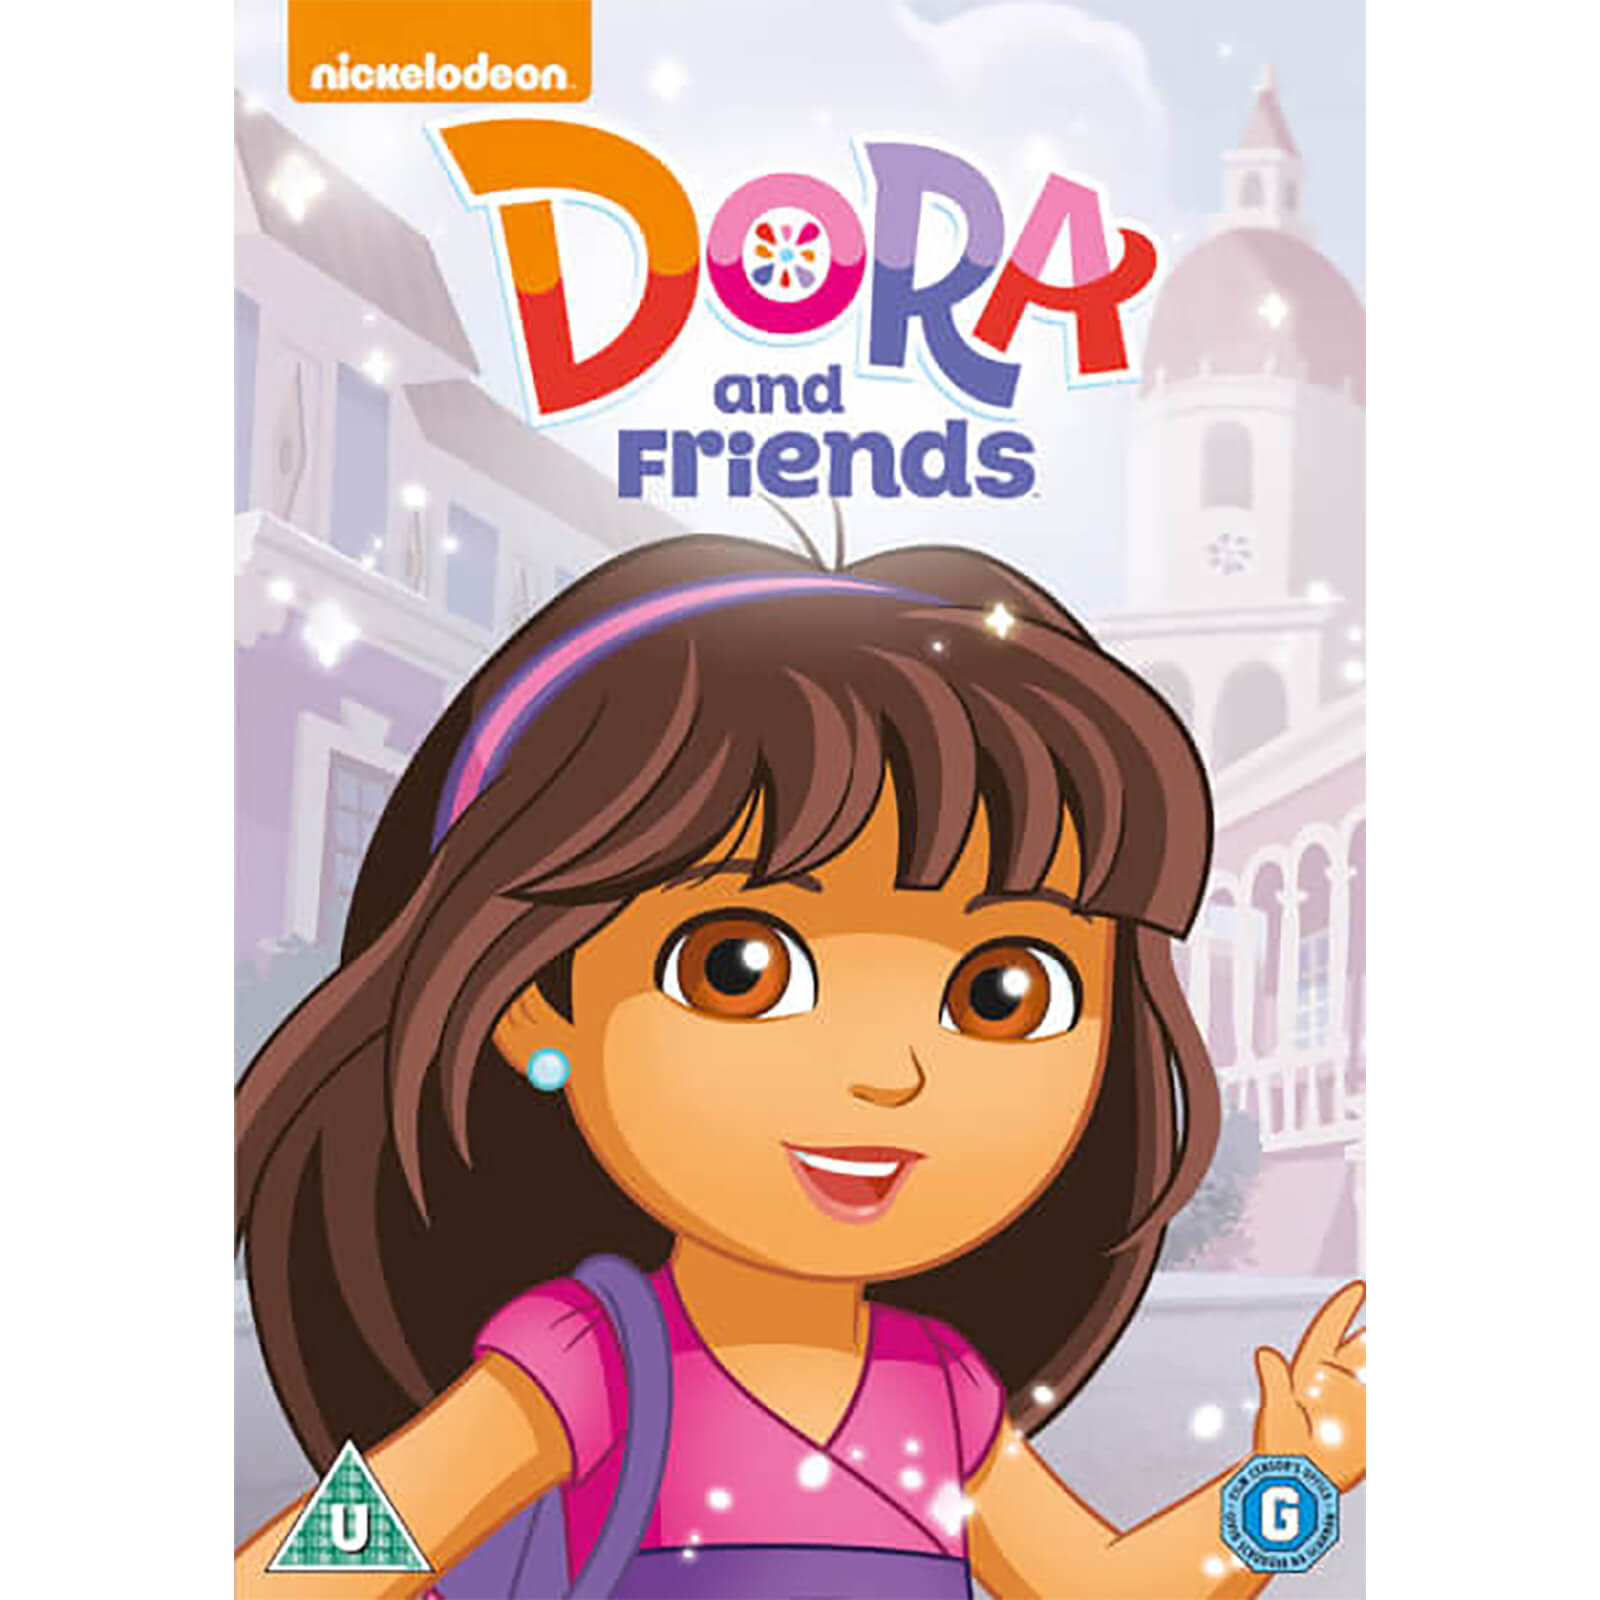 Dora The Explorer: Dora and Friends - Big Face Edition